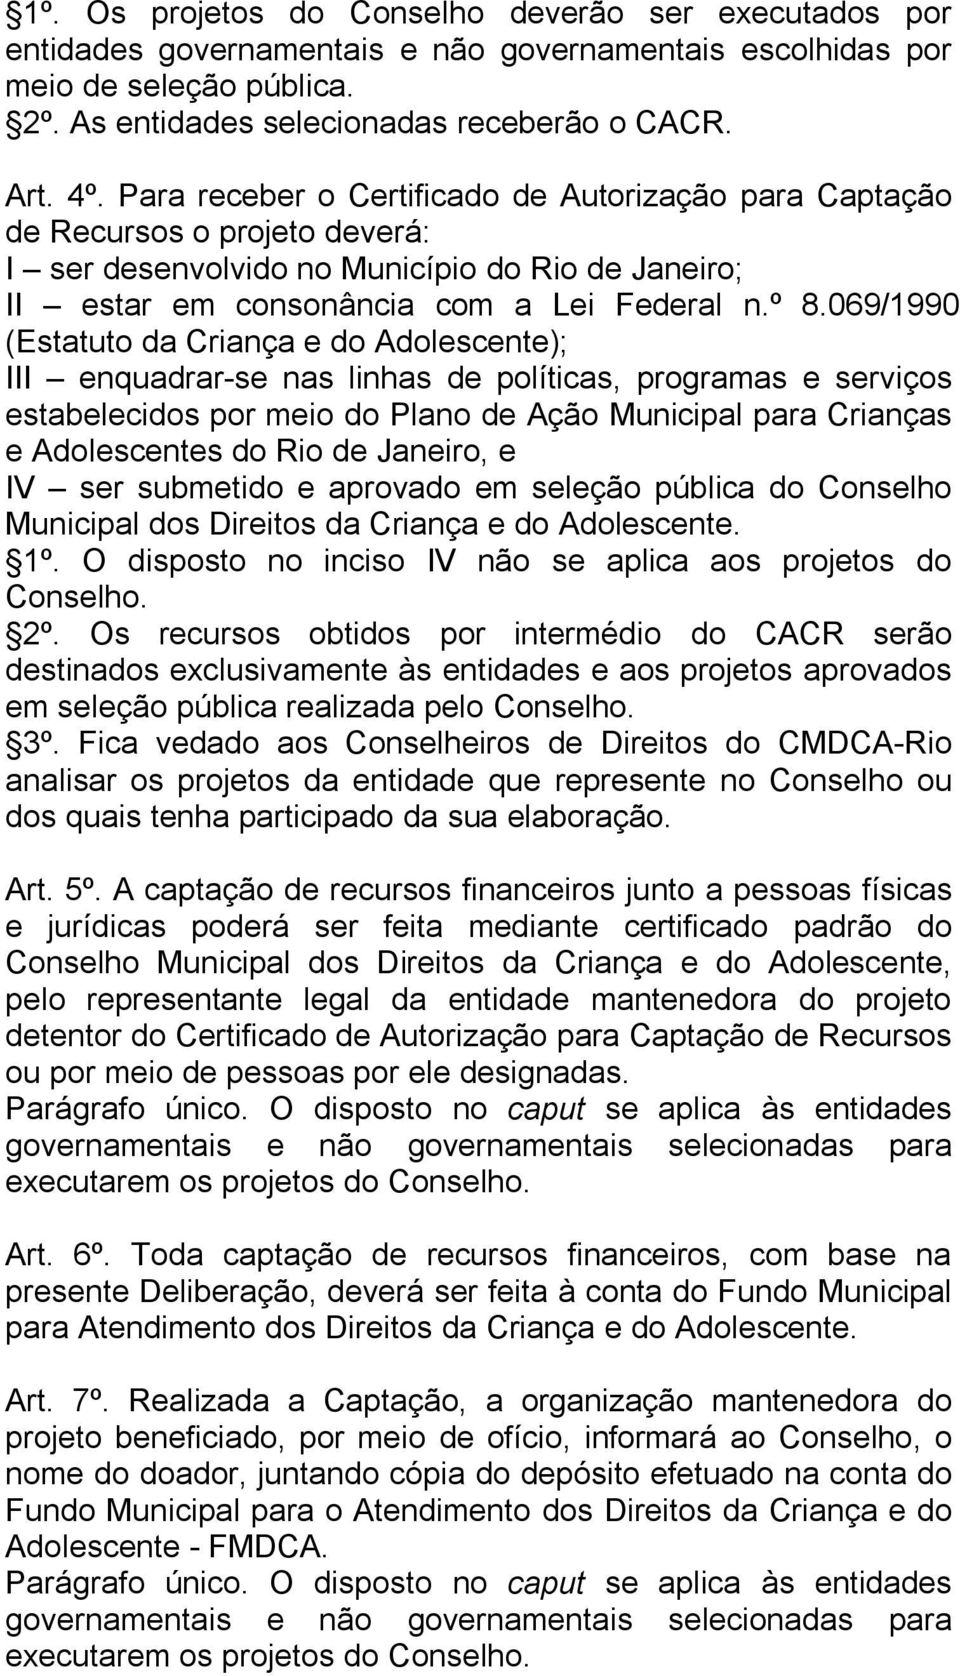 069/1990 (Estatuto da Criança e do Adolescente); III enquadrar-se nas linhas de políticas, programas e serviços estabelecidos por meio do Plano de Ação Municipal para Crianças e Adolescentes do Rio